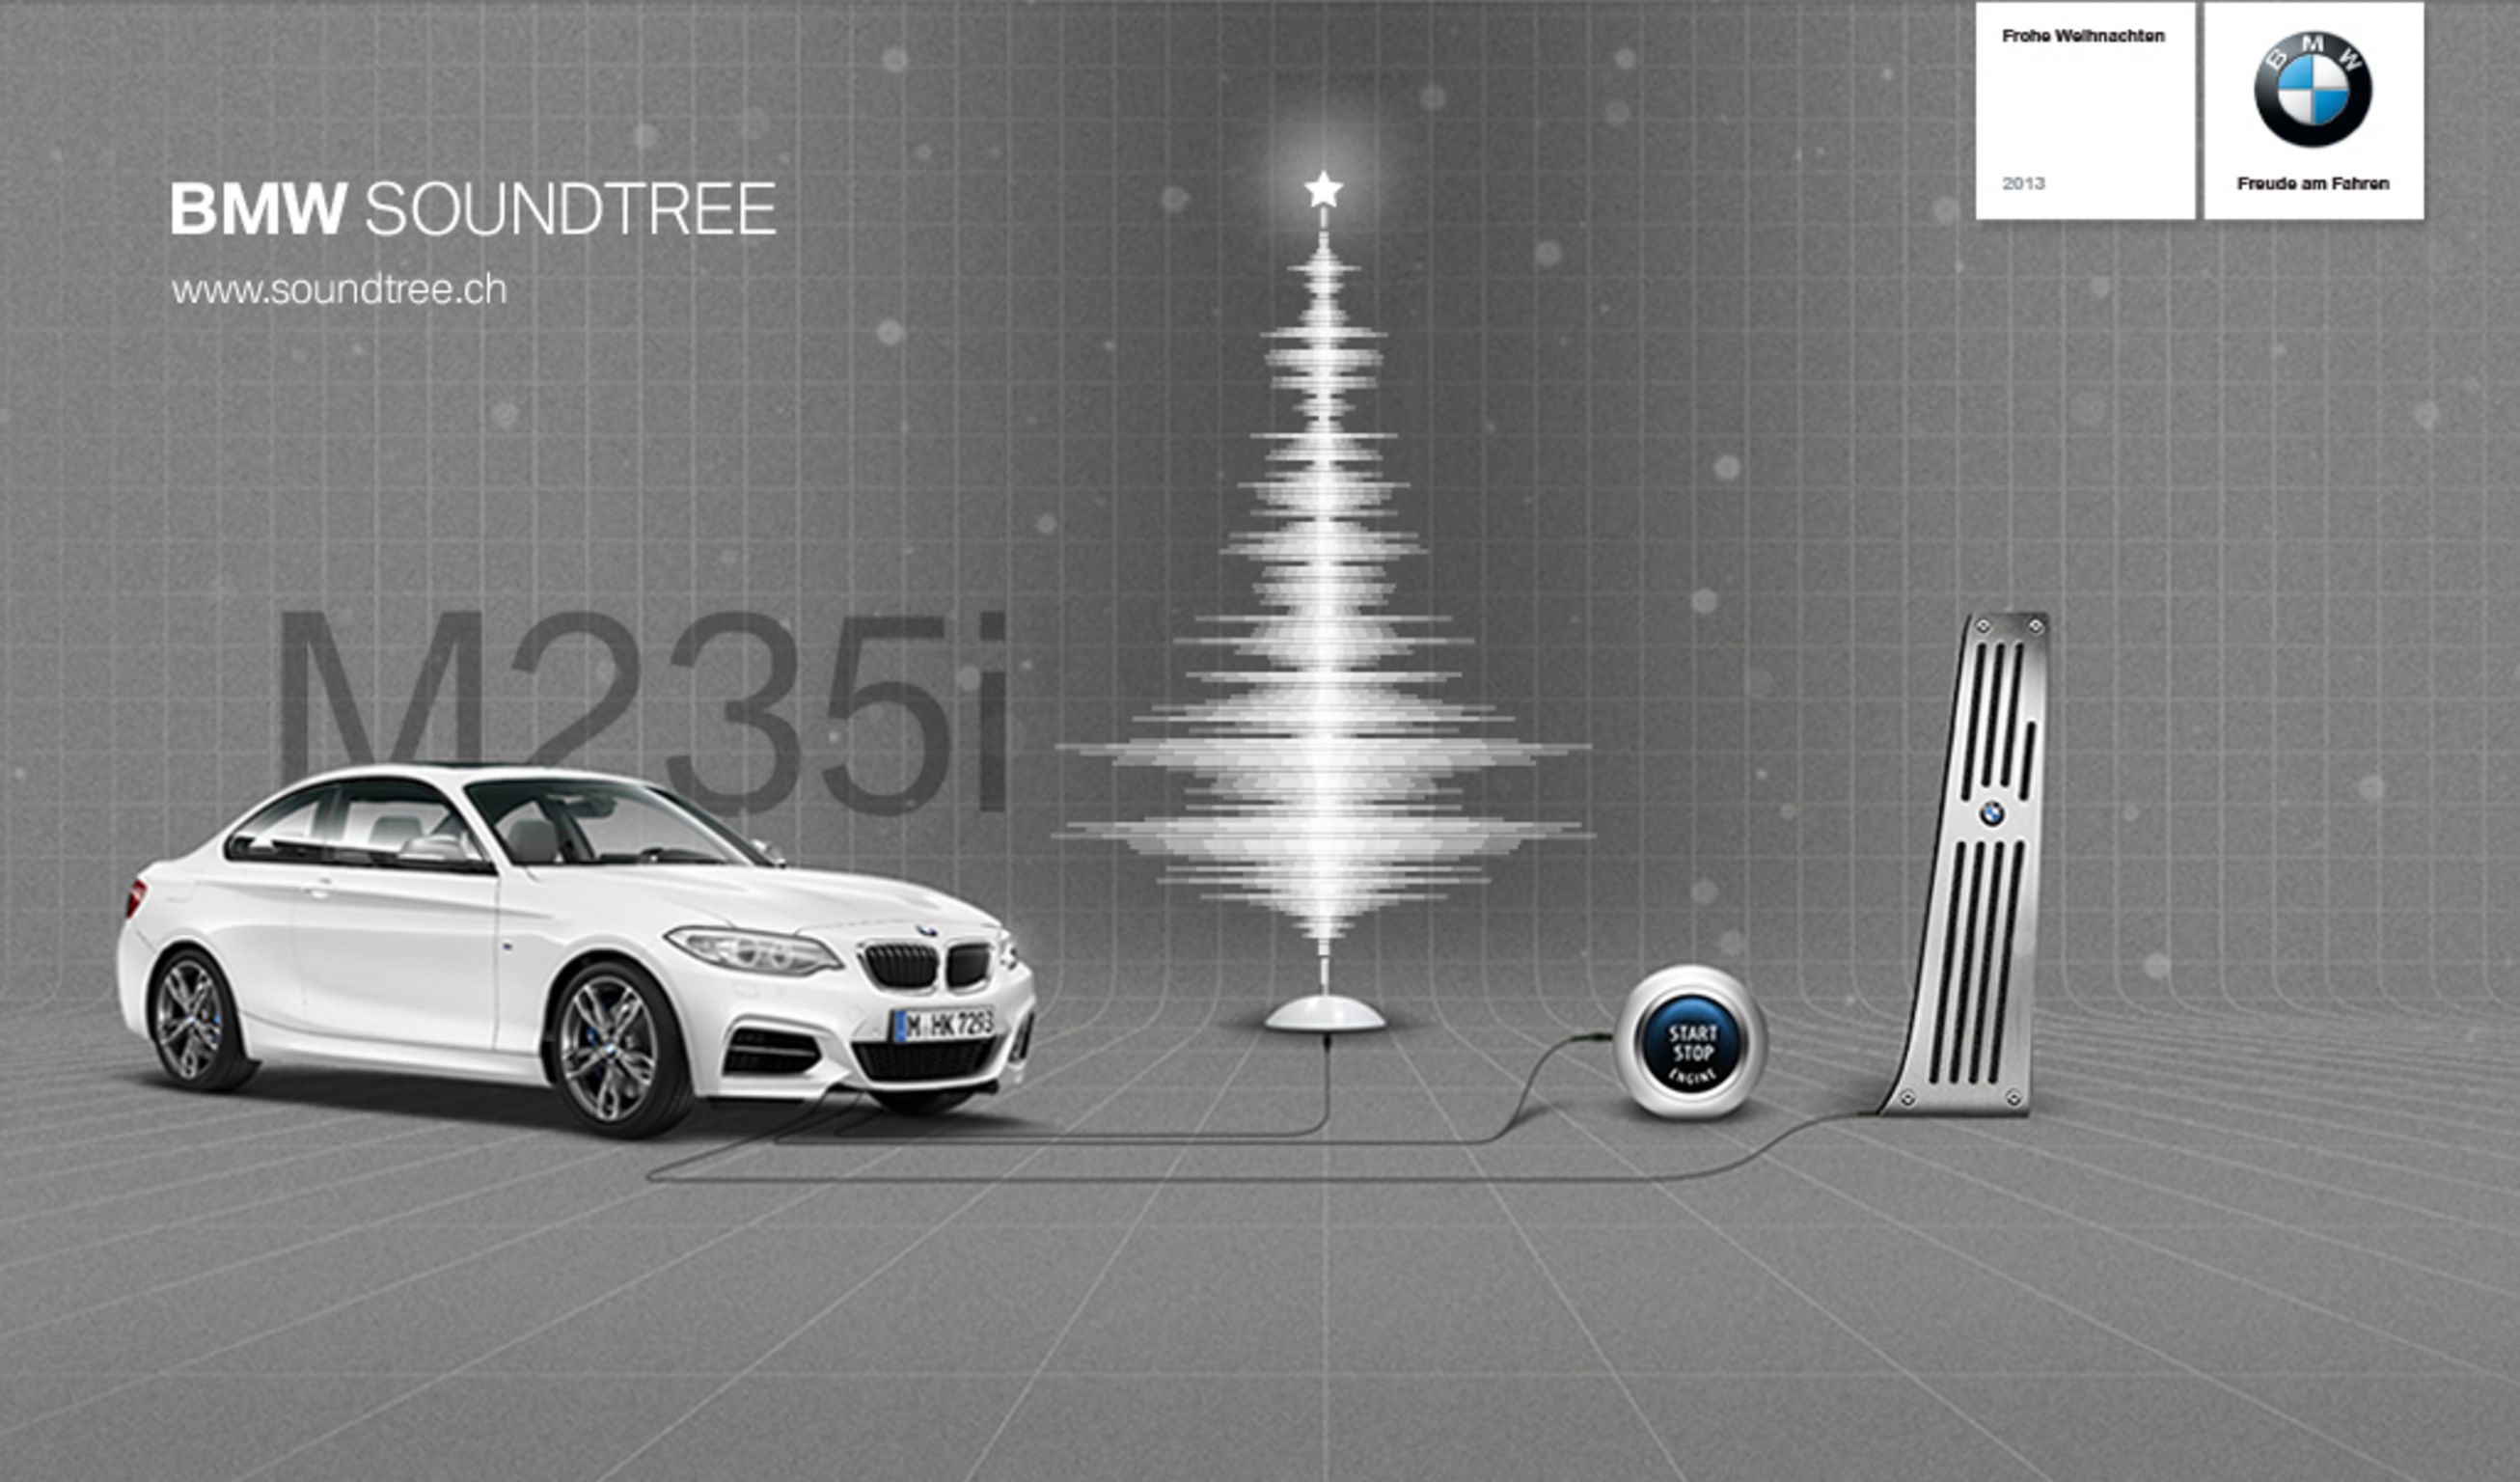 BMW Soundtree